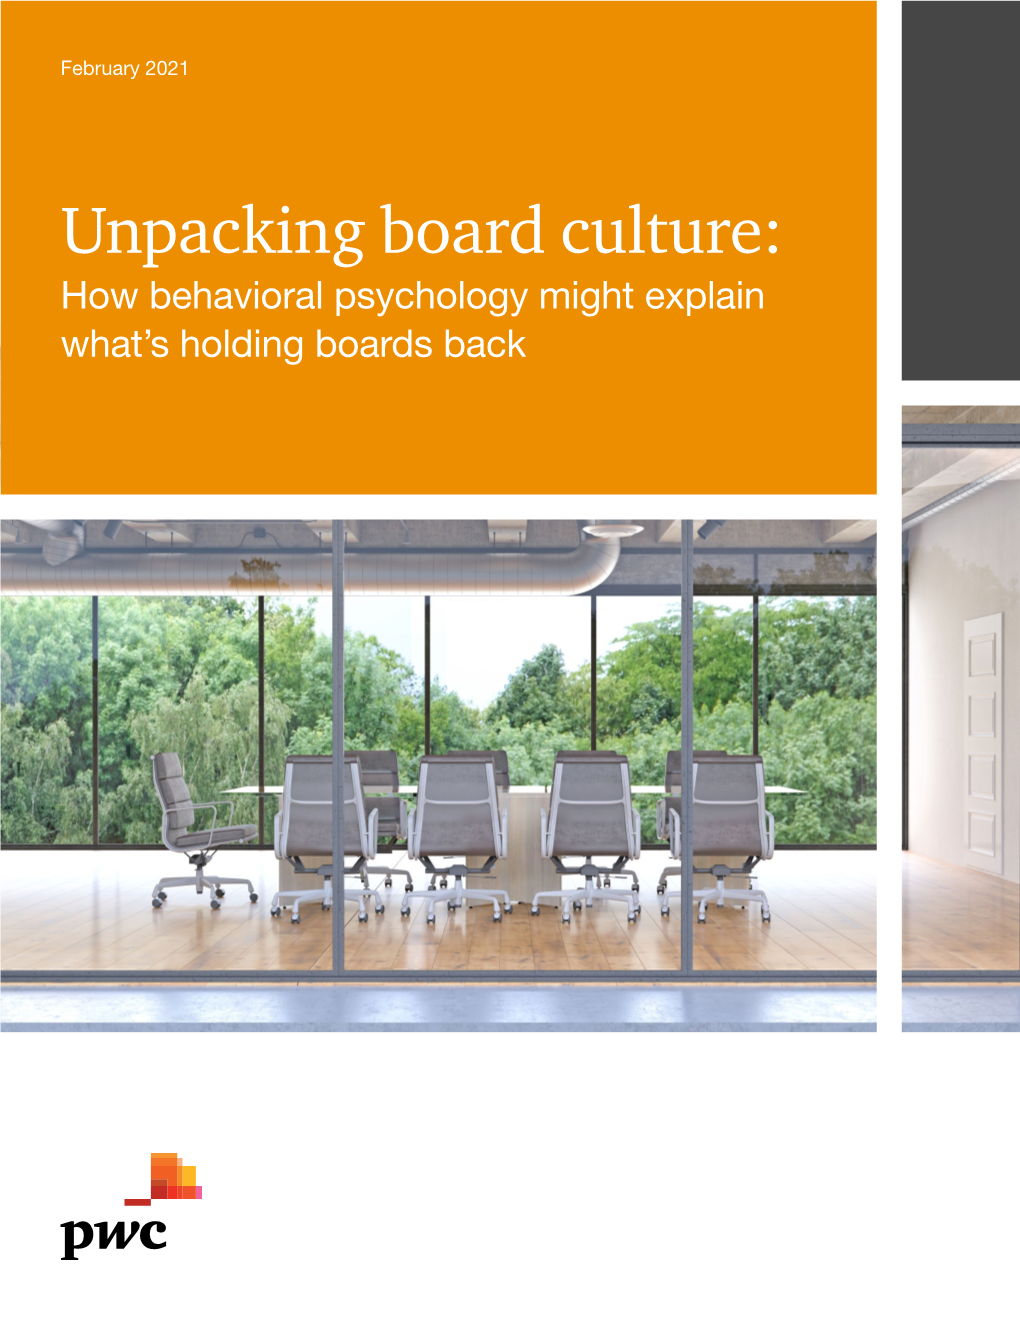 Unpacking Board Culture